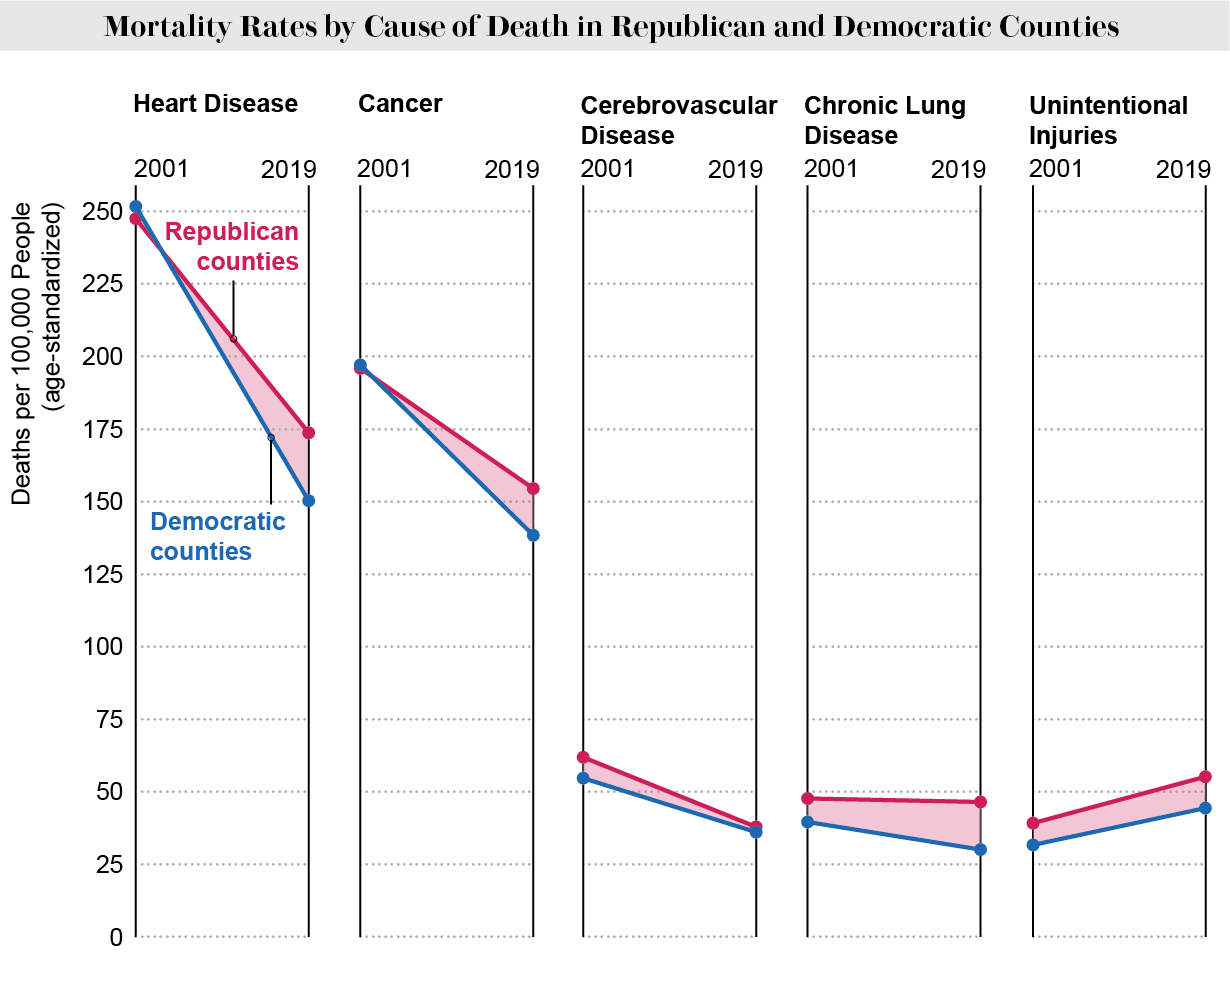 El gráfico de líneas muestra las tasas de mortalidad por causa de muerte en los condados republicanos y demócratas de EE. UU. en 2001 y 2019.